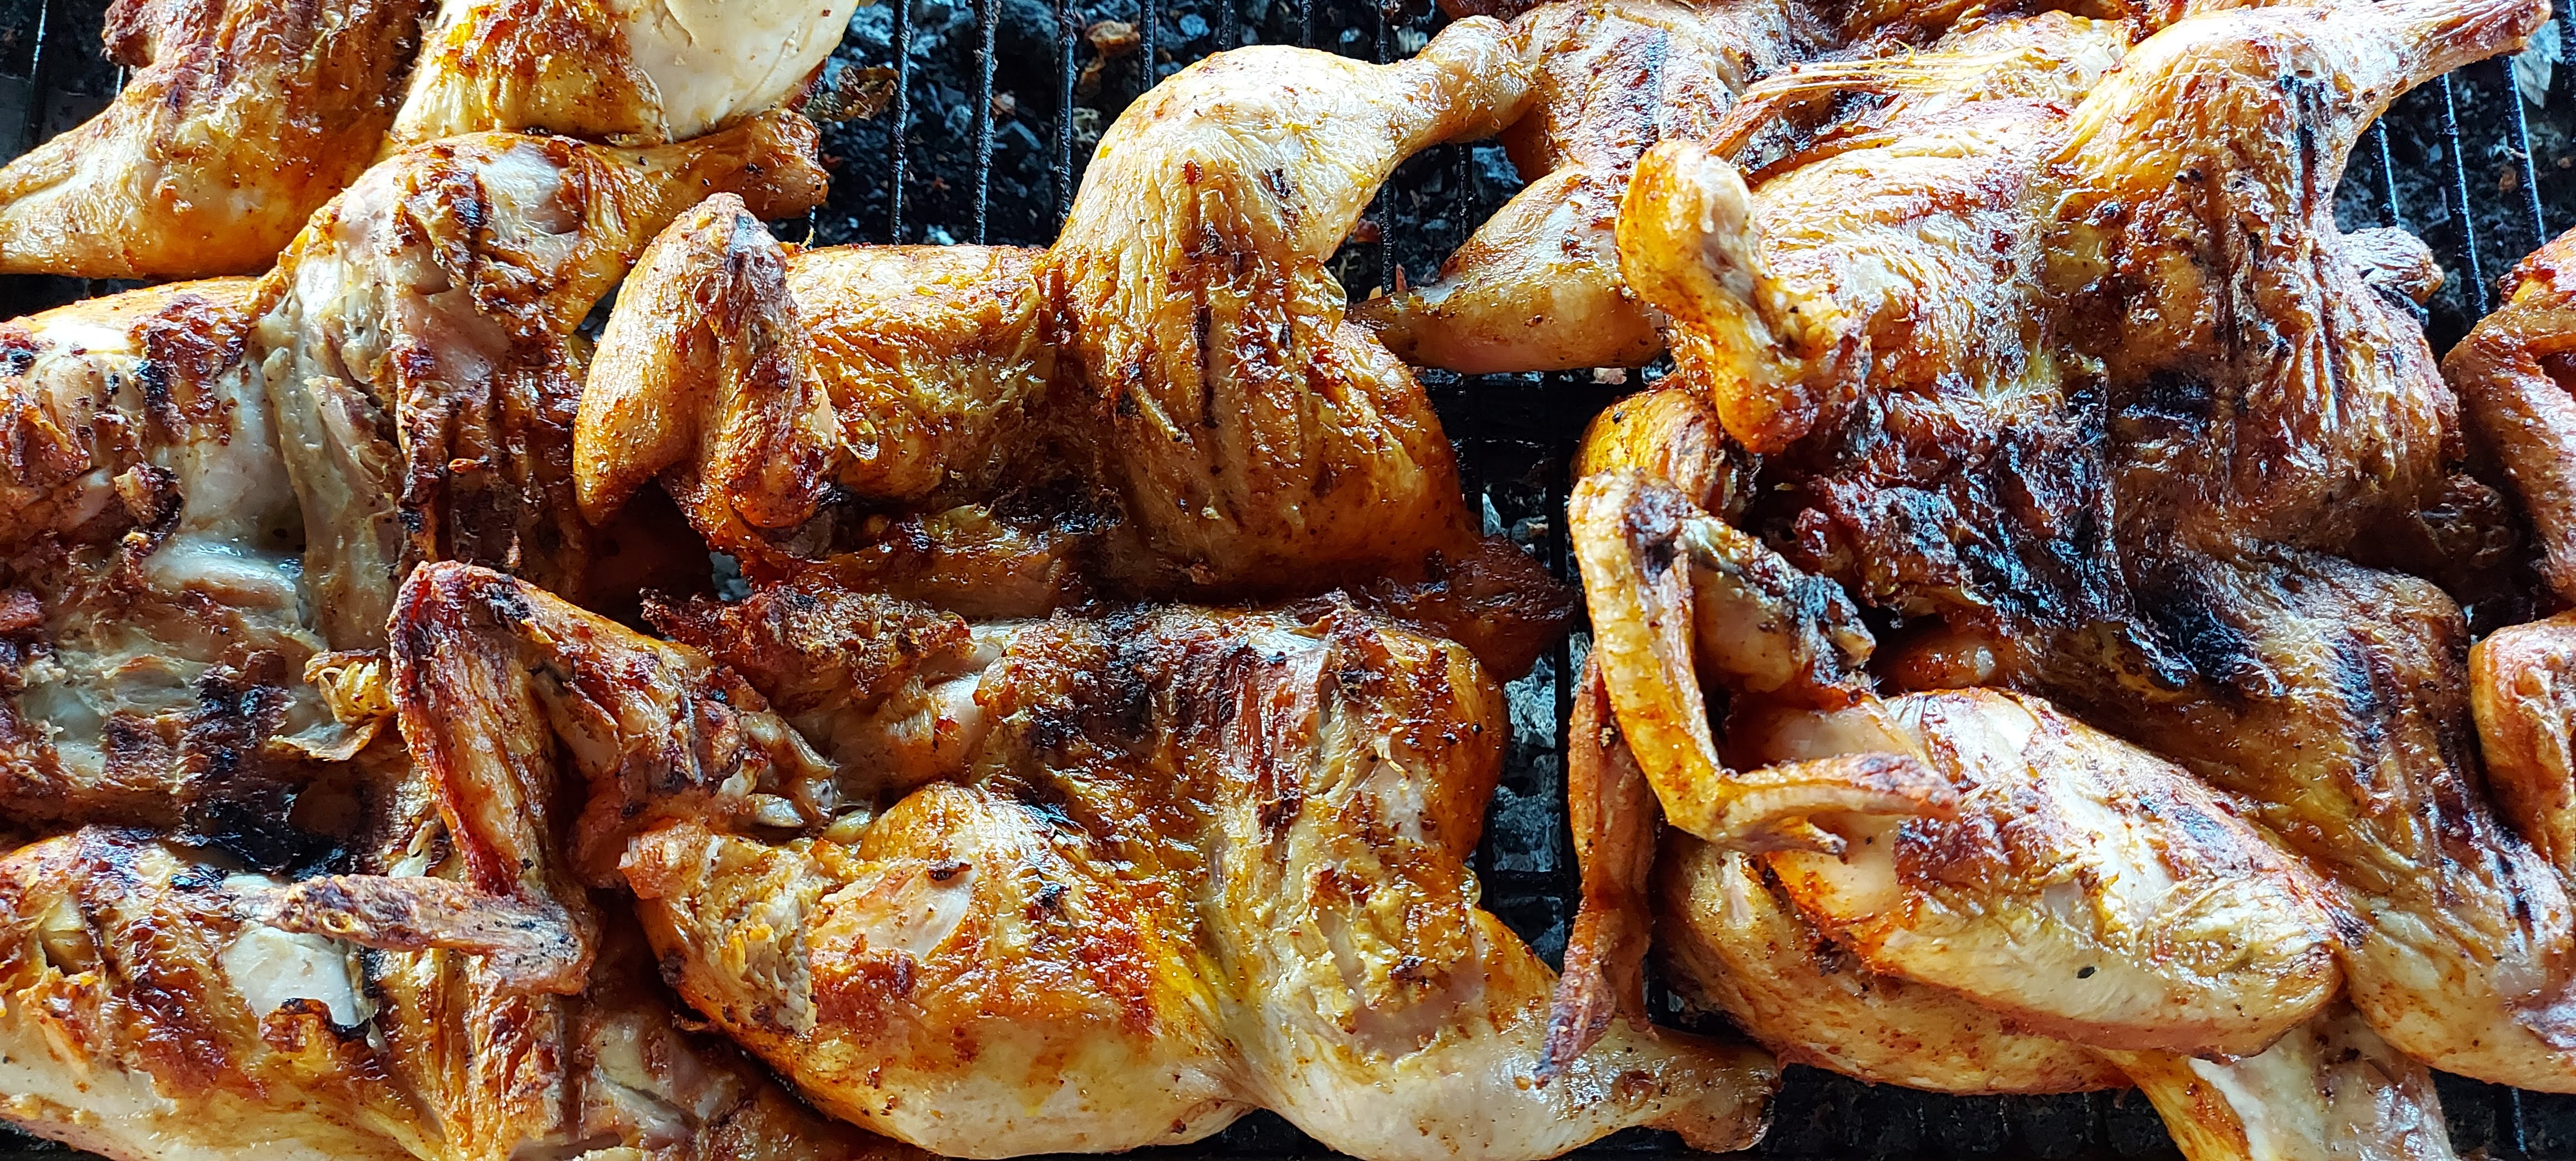 El mejor pollo asado al carbón en la ciudad de Sun Valley / Best Charcoal Grilled Chicken in Sun Valley City